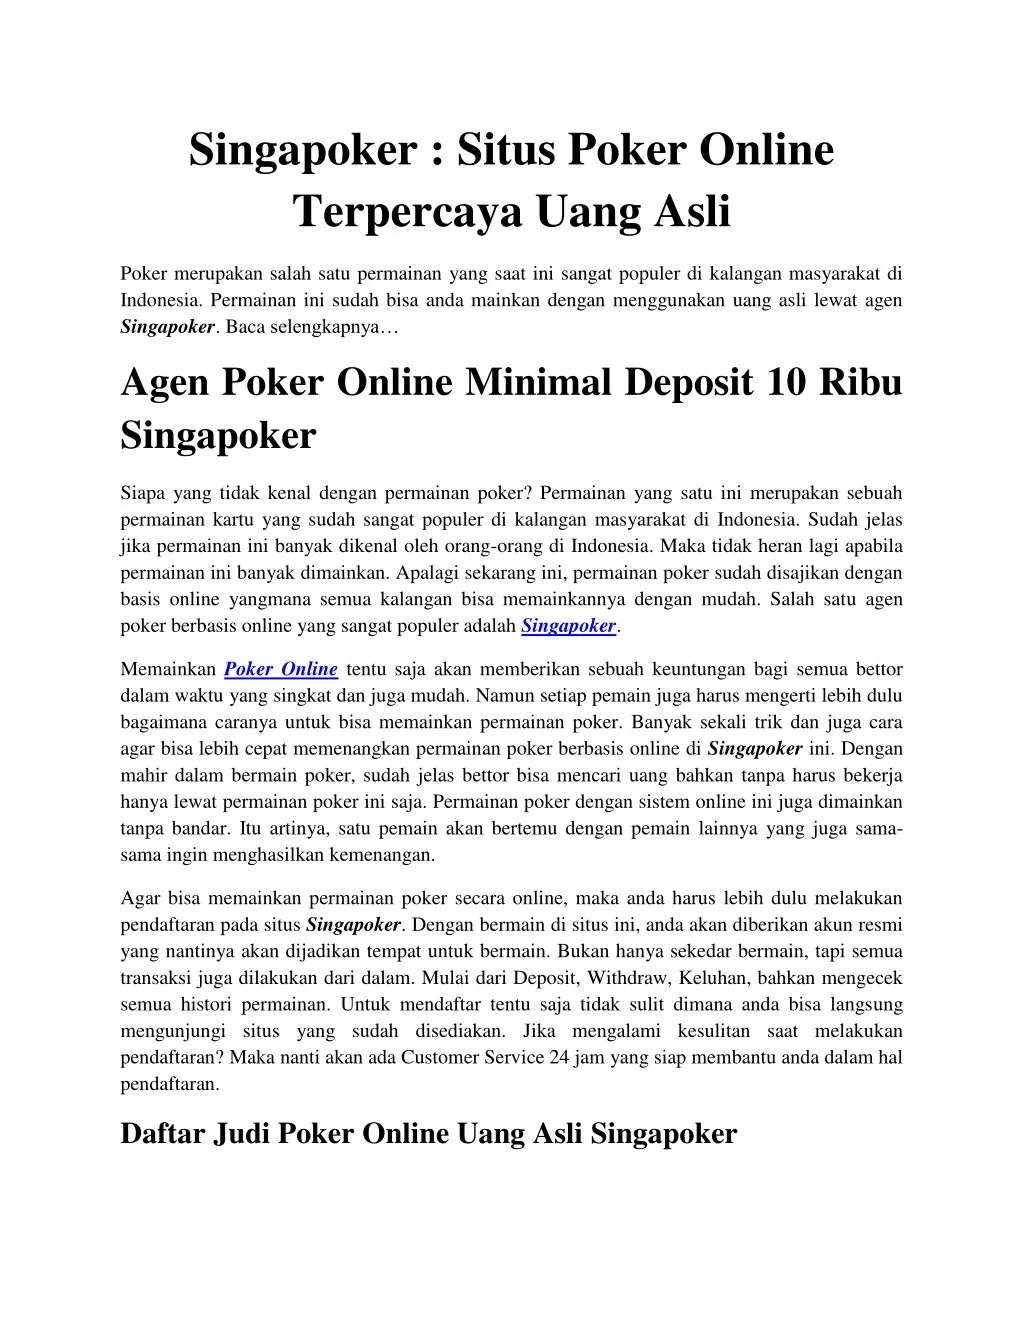 singapoker situs poker online terpercaya uang asli